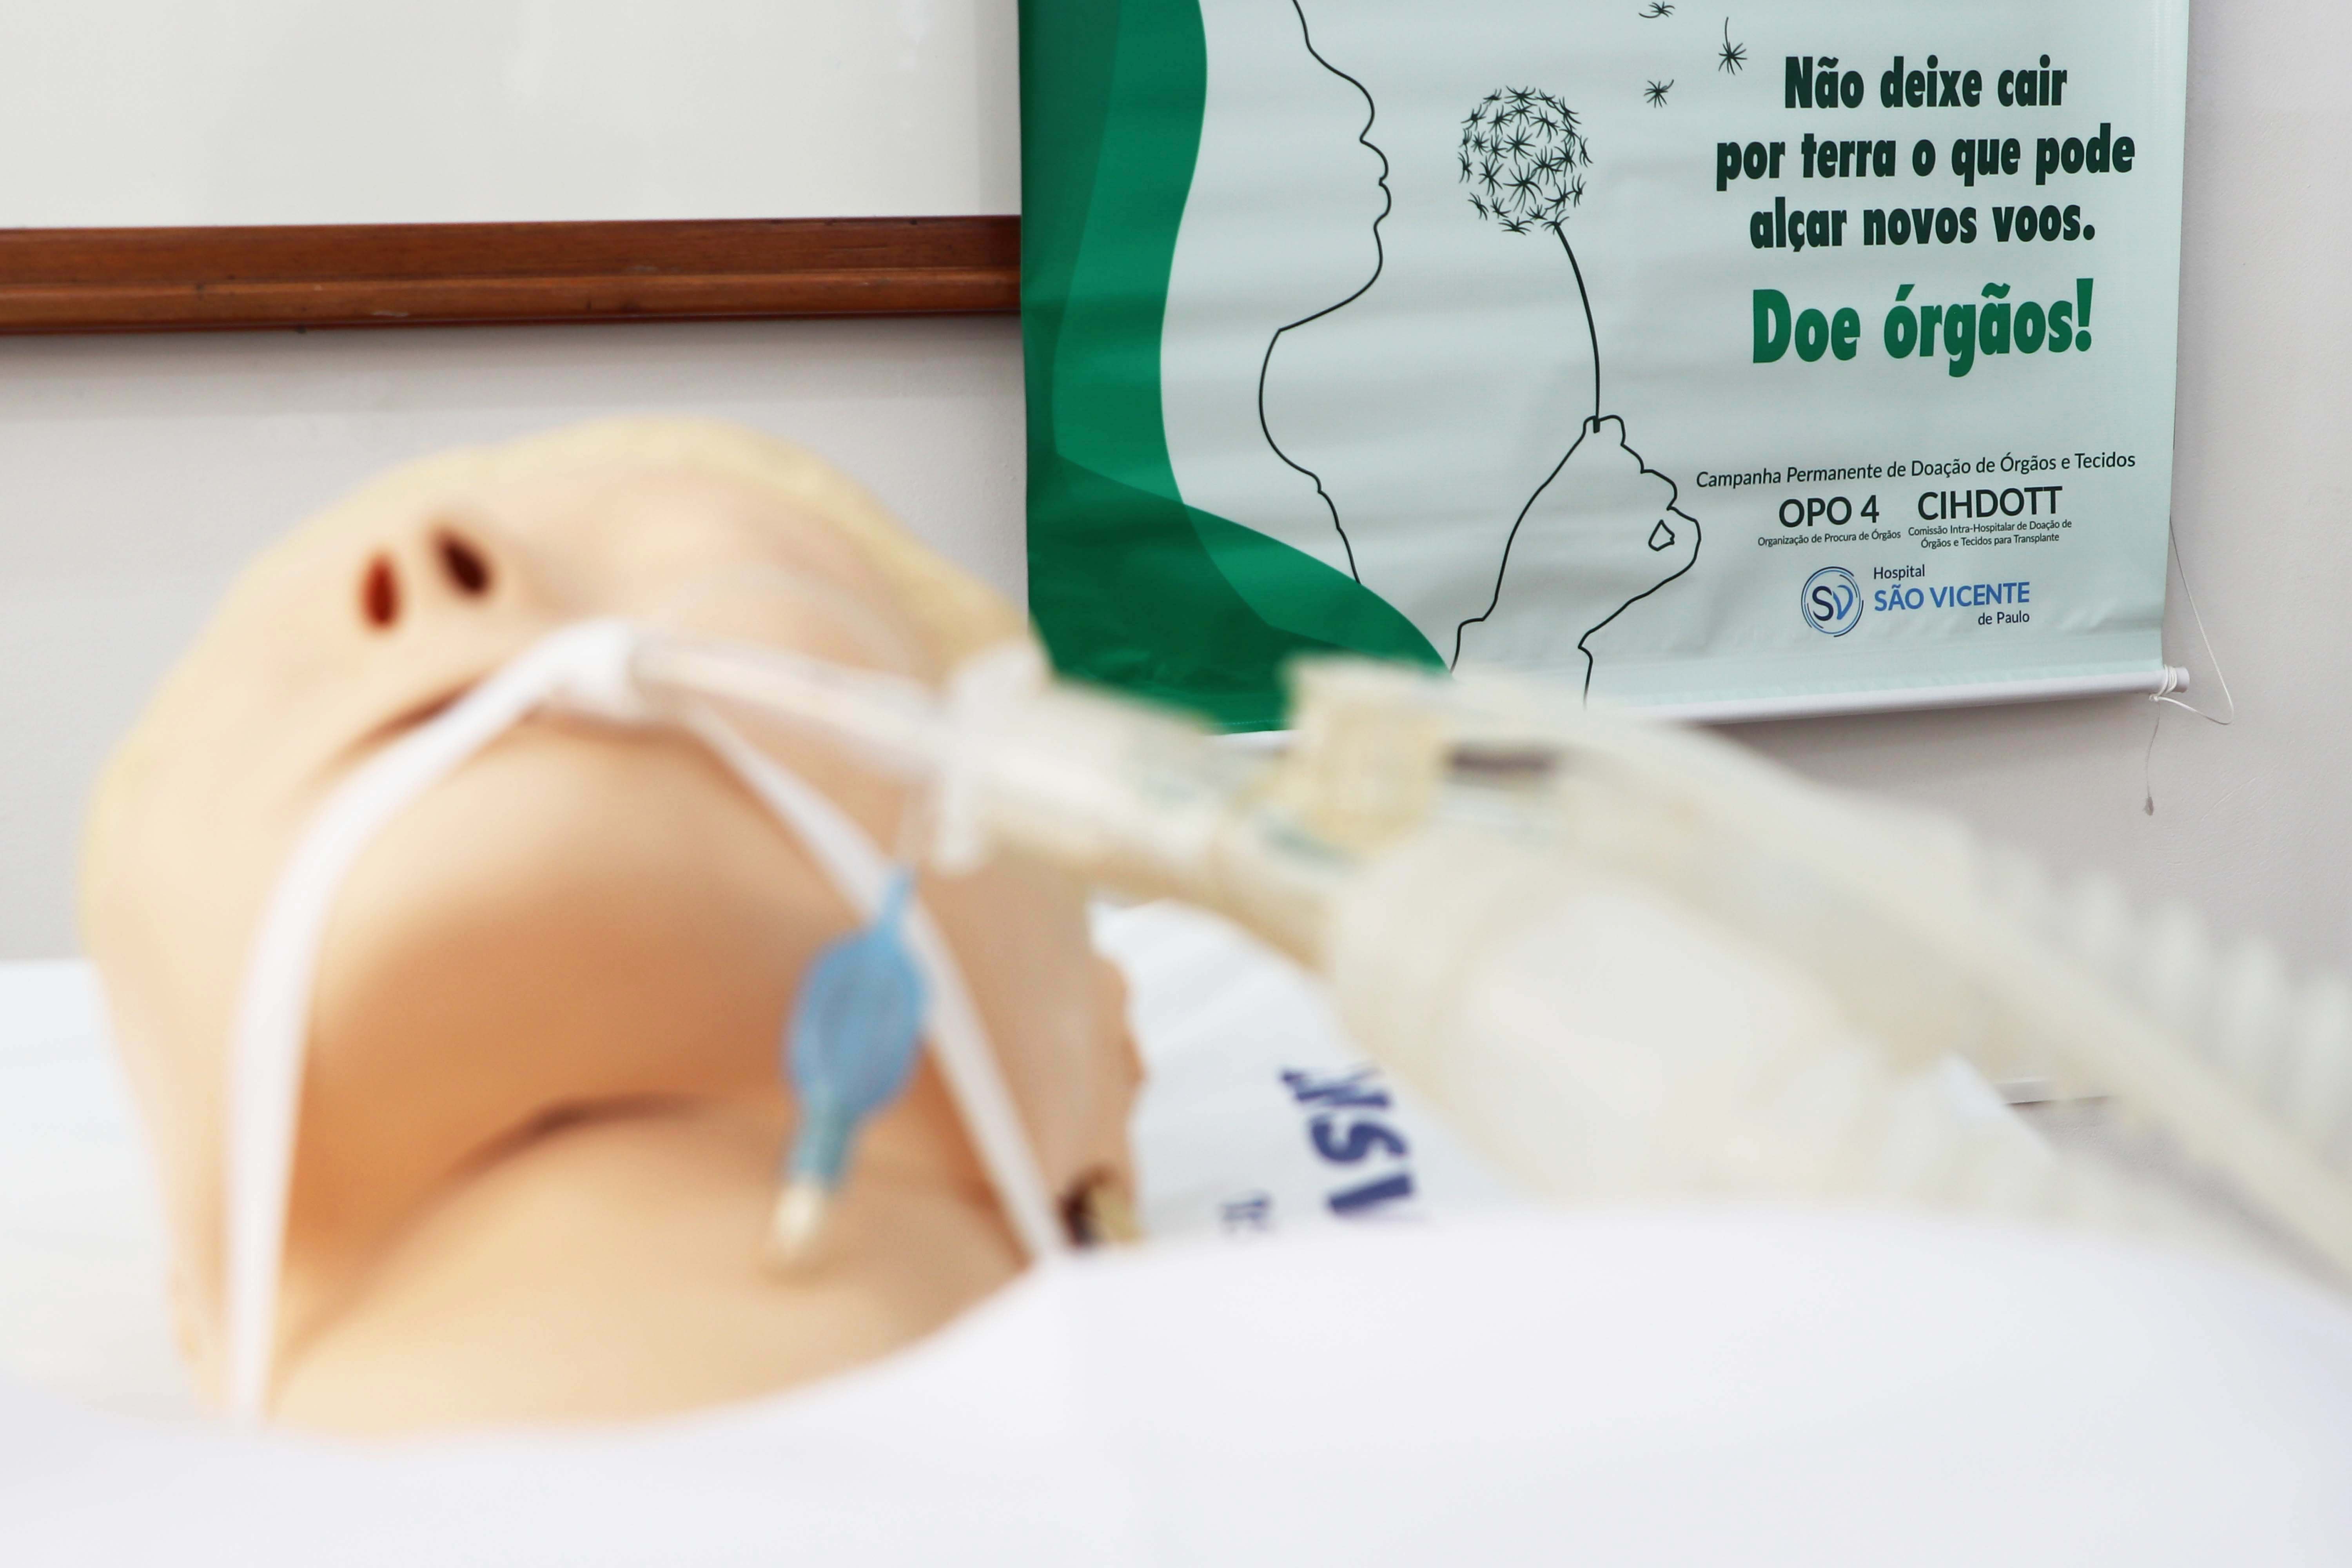 Curso de Medicina promove ação de incentivo à doação de órgãos